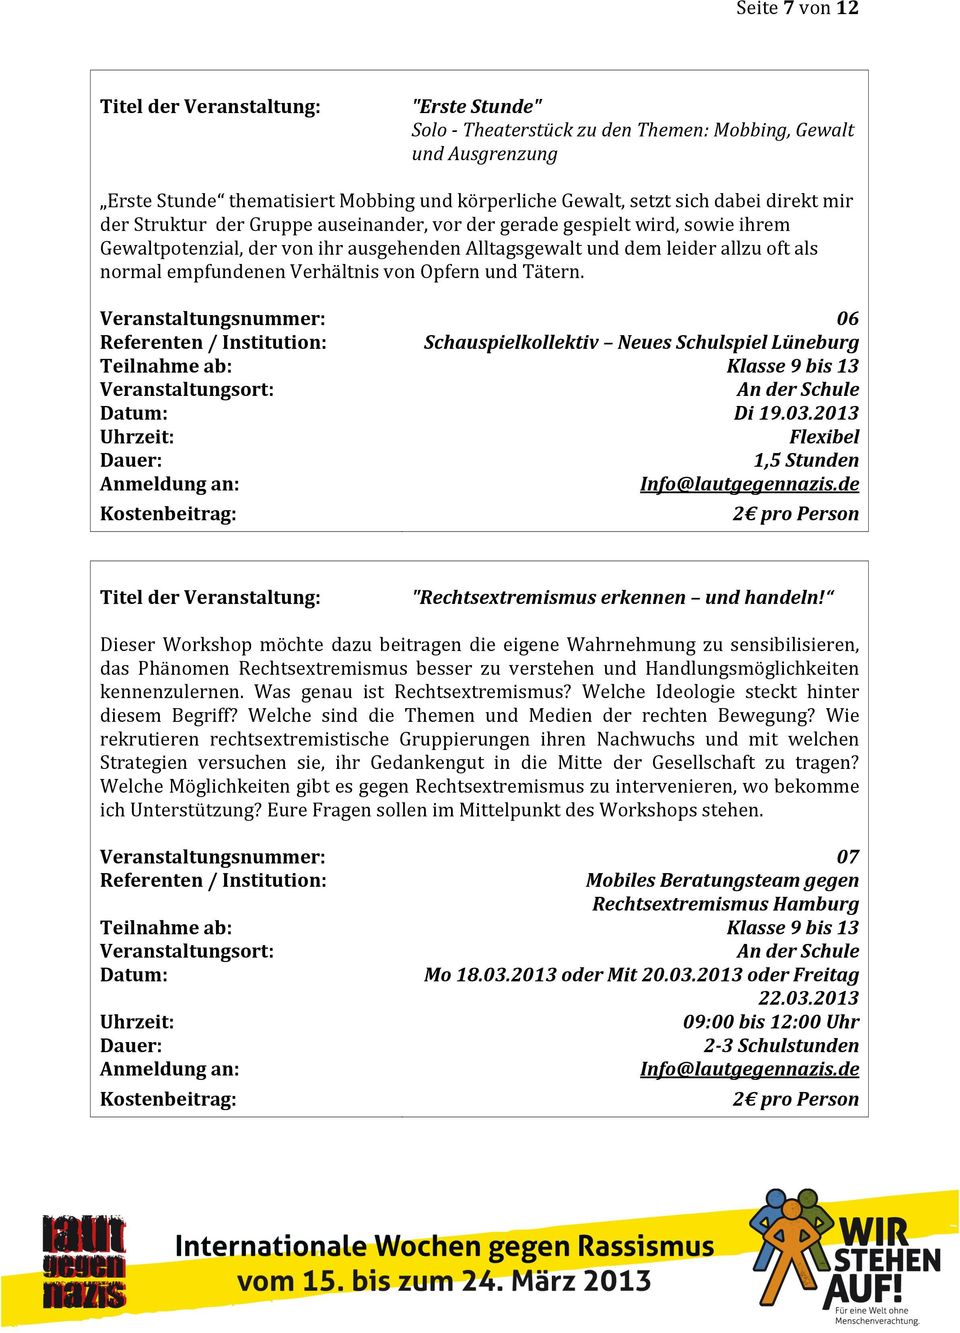 06 Schauspielkollektiv Neues Schulspiel Lüneburg Di 19.03.2013 1,5 Stunden "Rechtsextremismus erkennen und handeln!